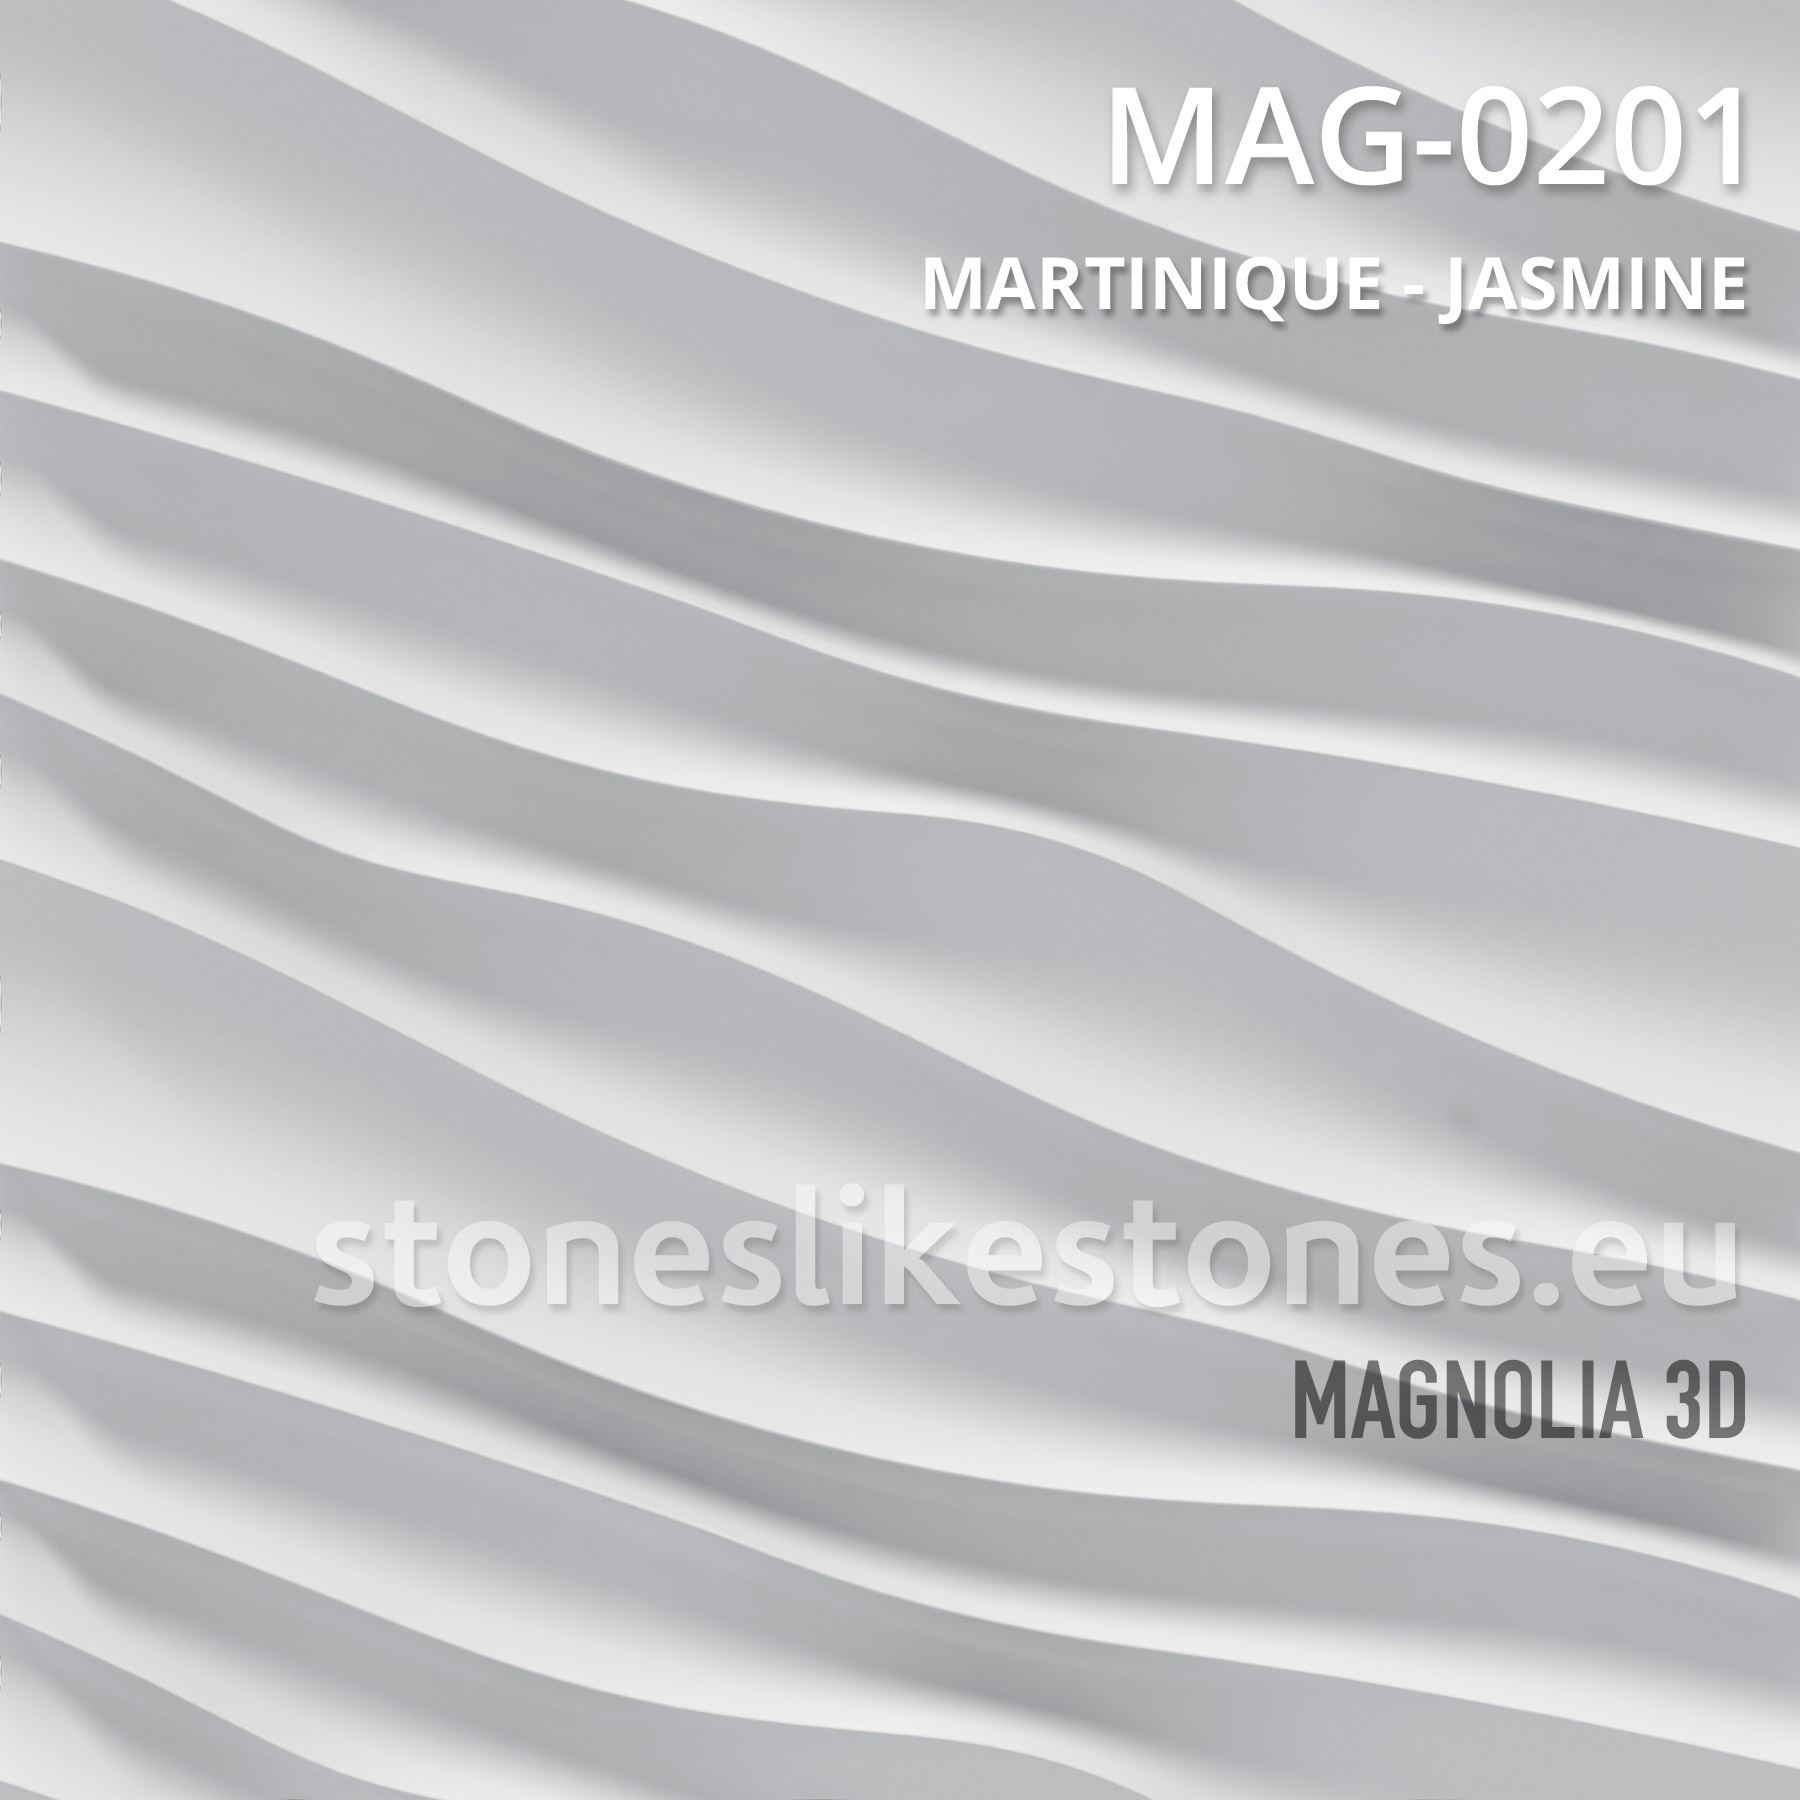 Magnolia 3D – MAG-0201 MARTINIQUE – JASMINE